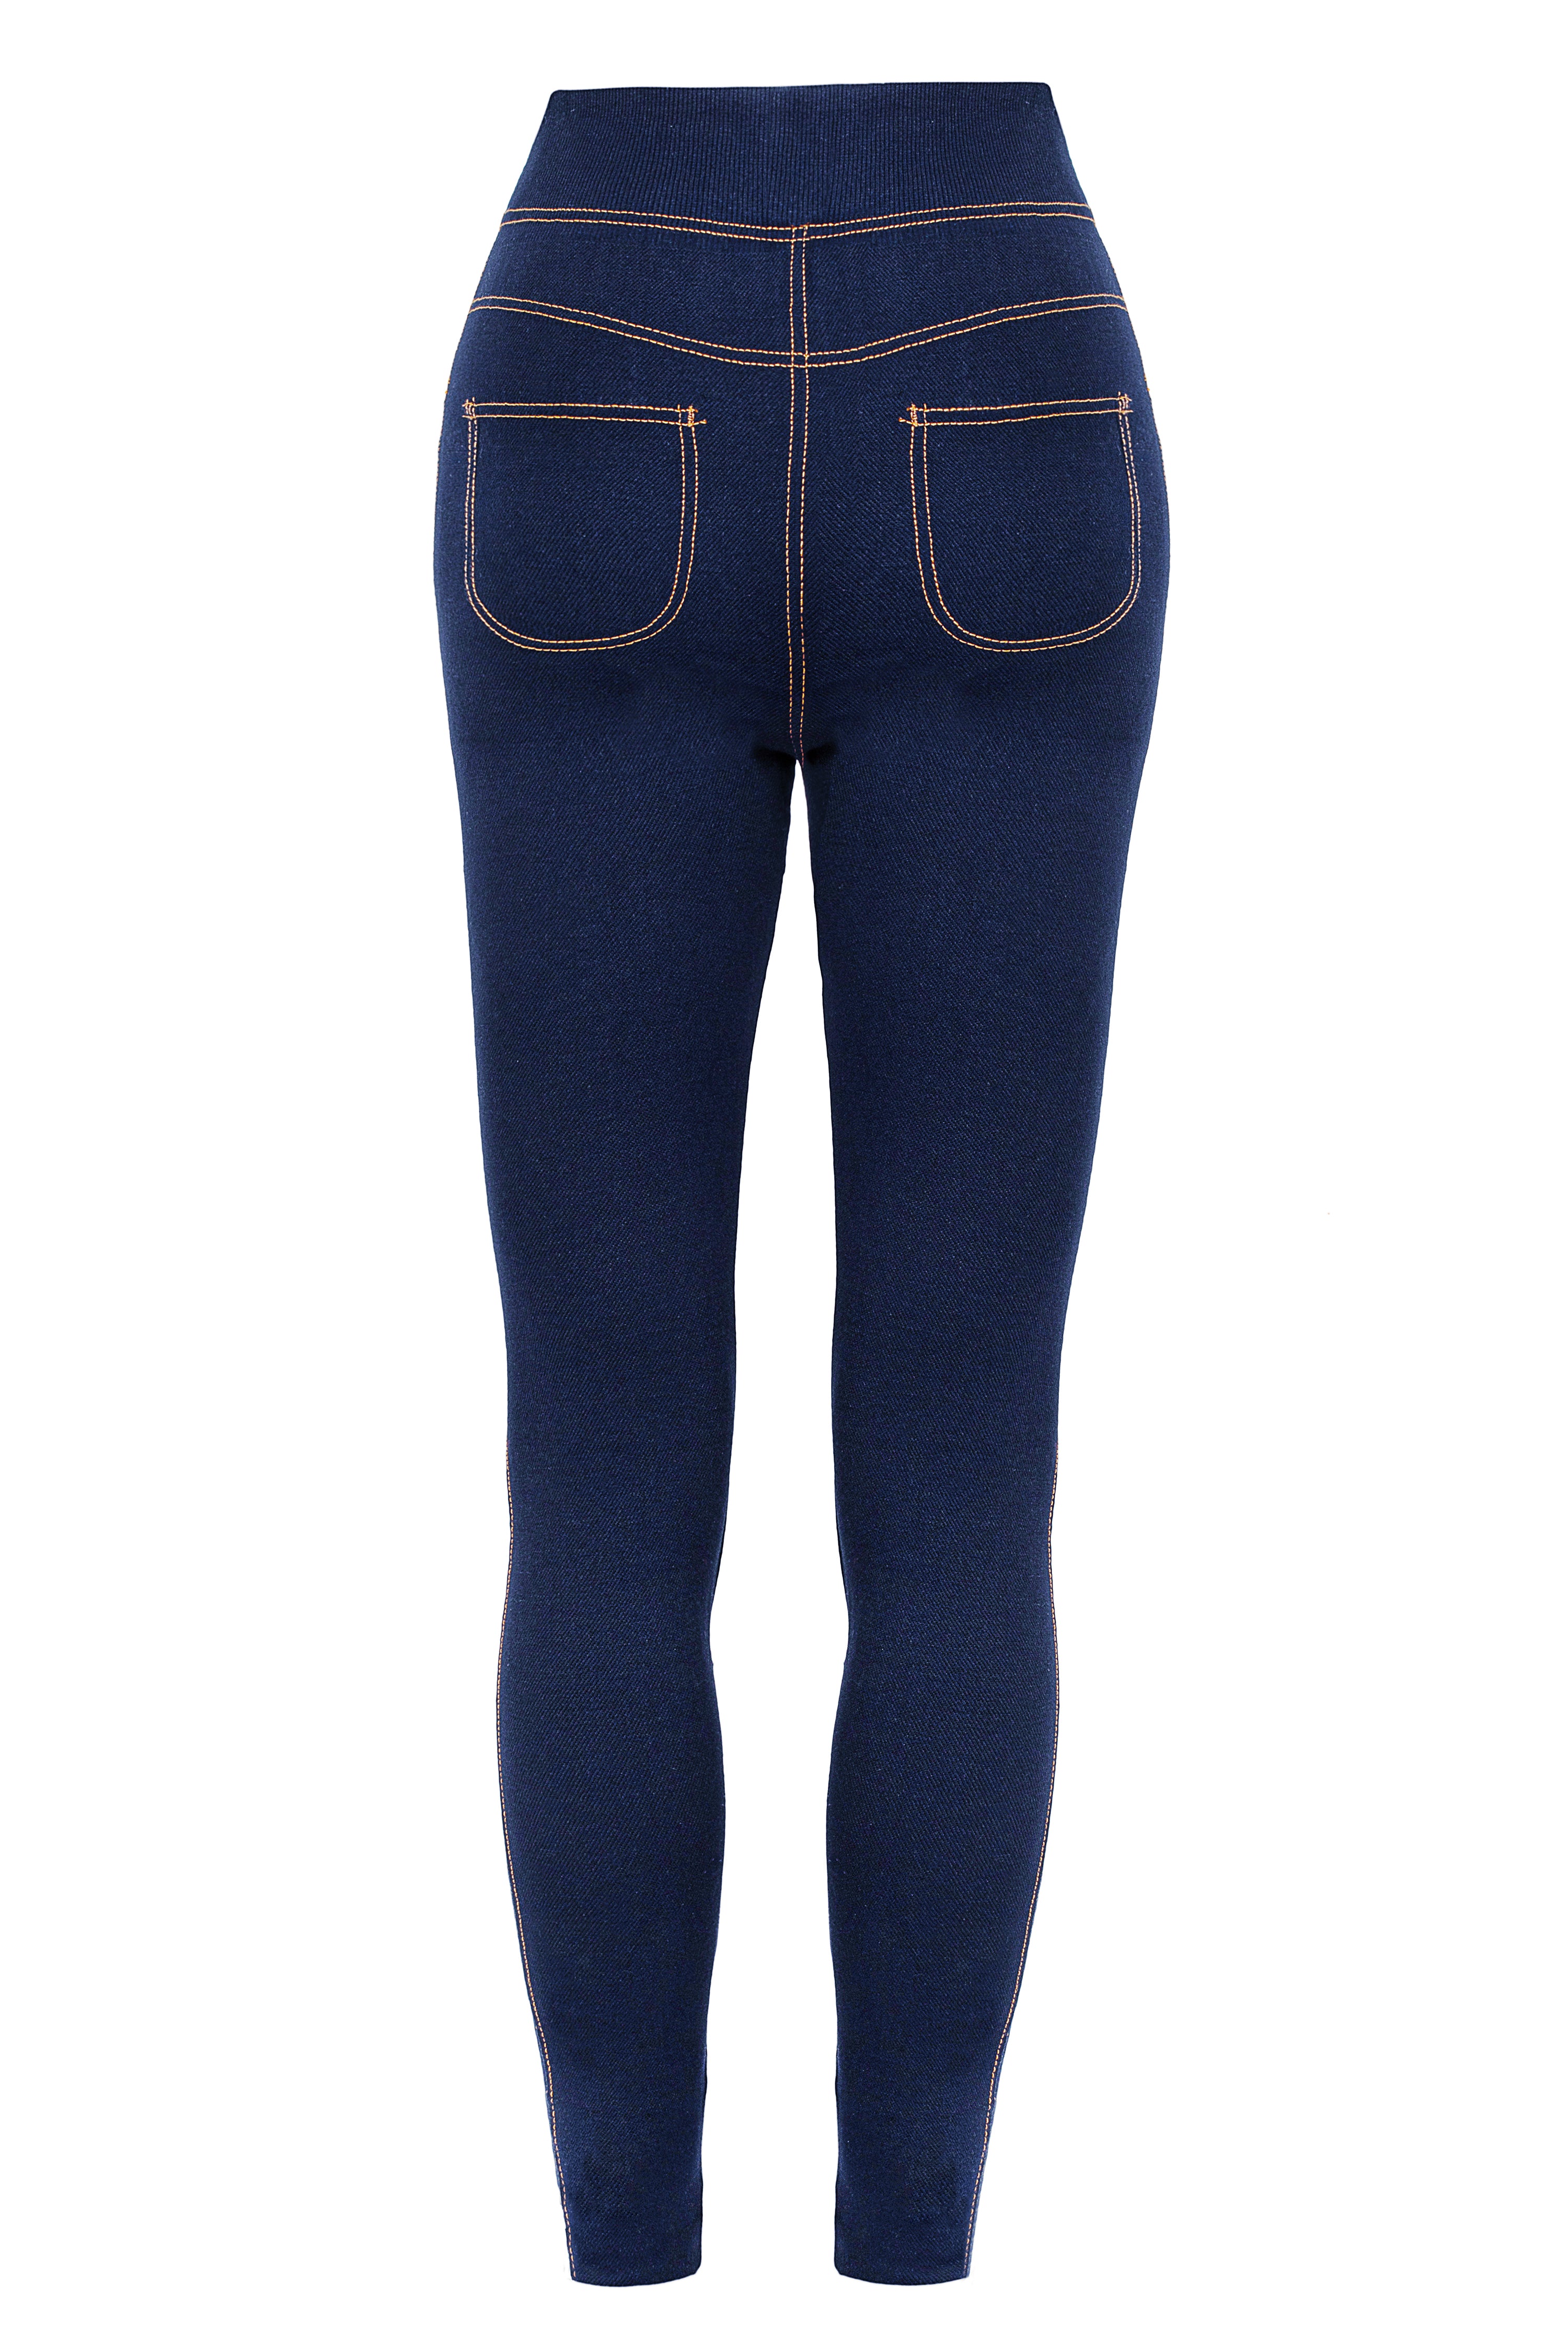 Lookbook Womens Winter Jeans Fleece Lined Slim Fit Stretch Warm Jeggings-Dark  Blue